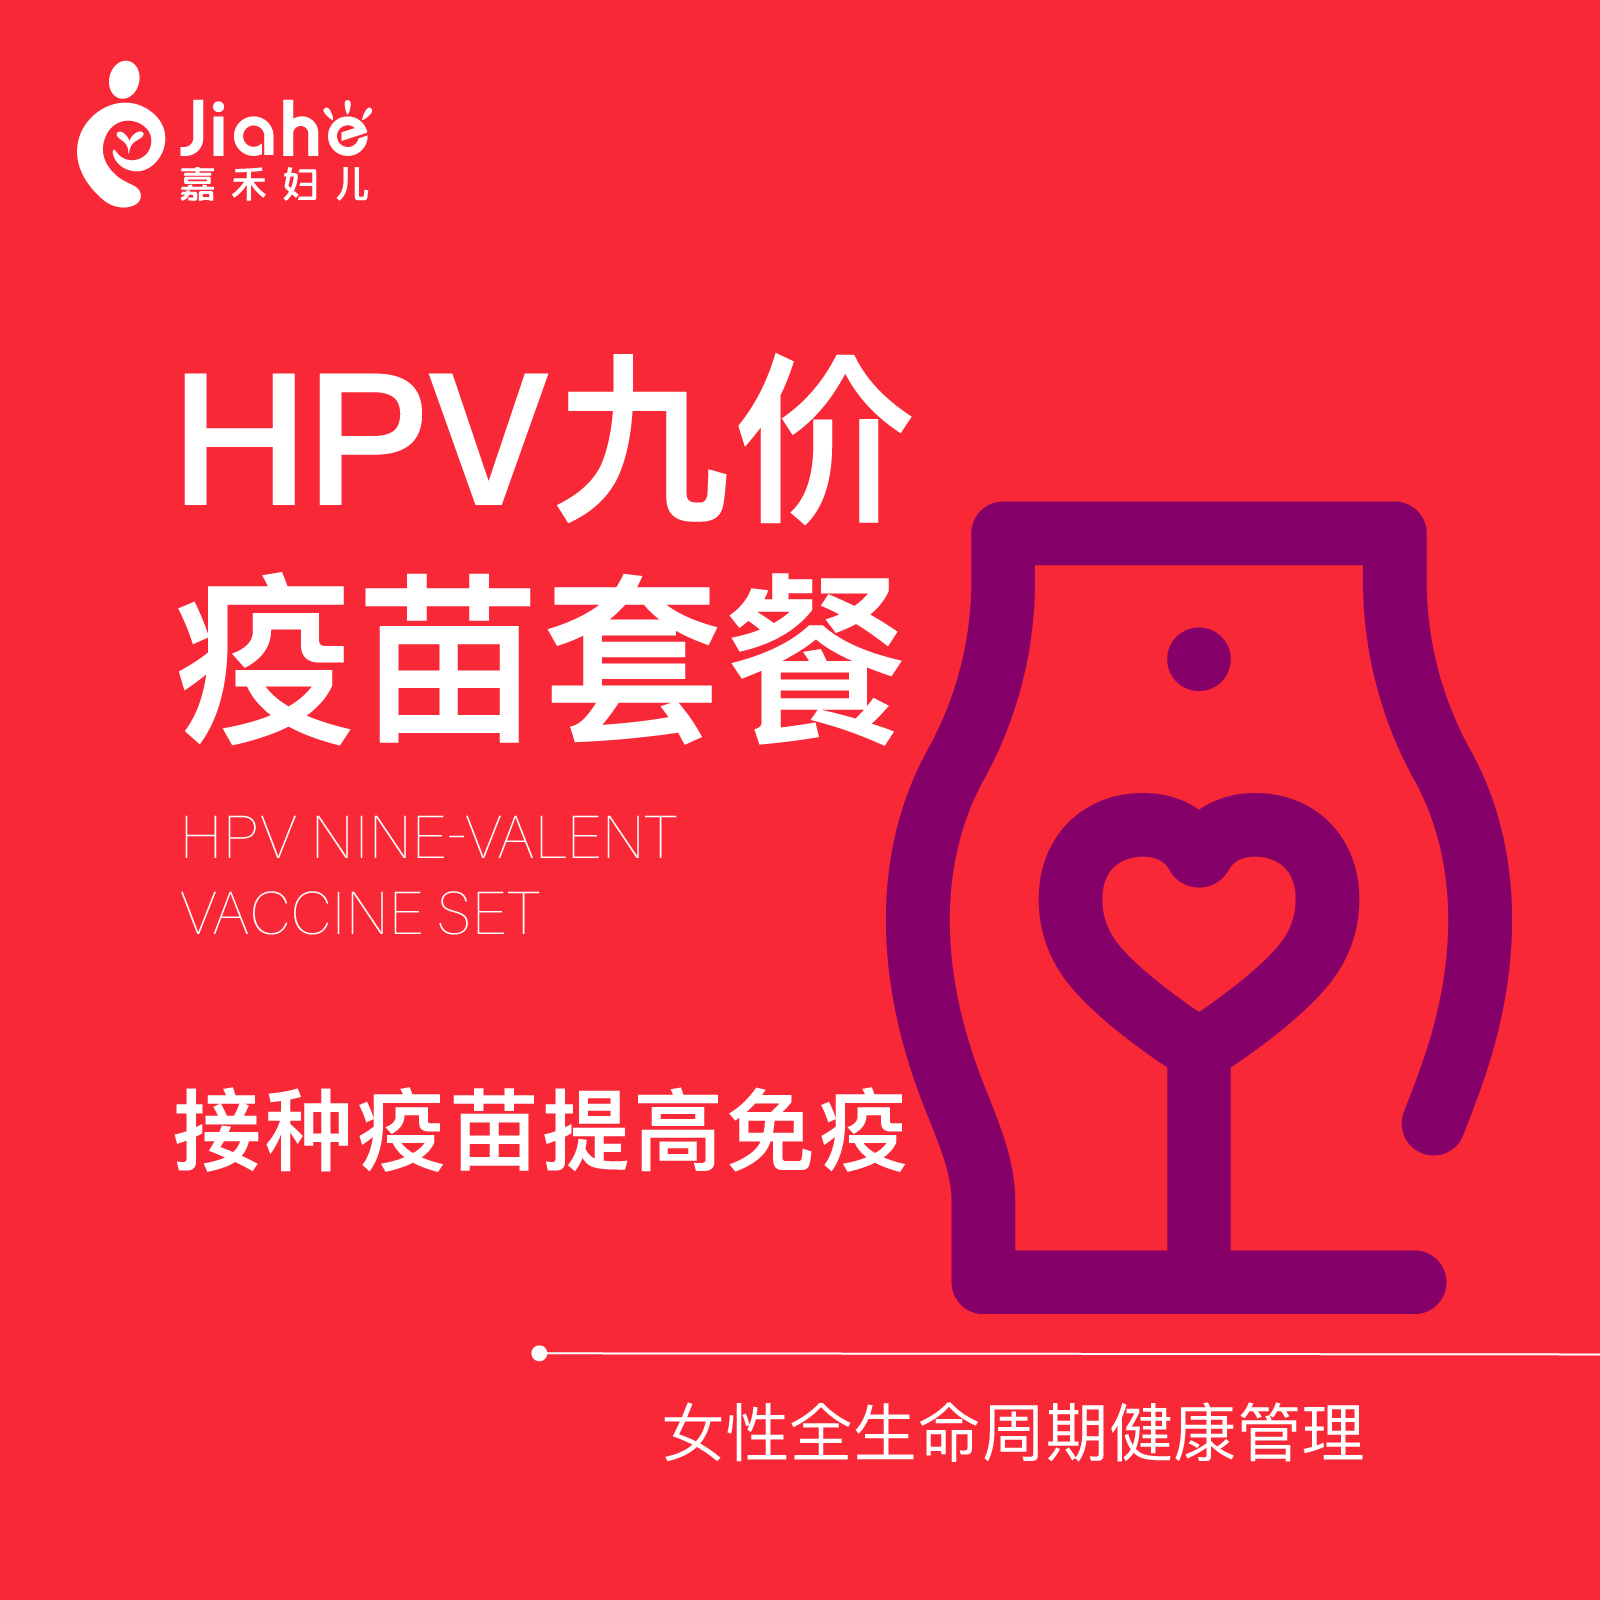 【现货扩龄hpv九价疫苗】HPV9价疫苗北京嘉禾妇儿立即可约